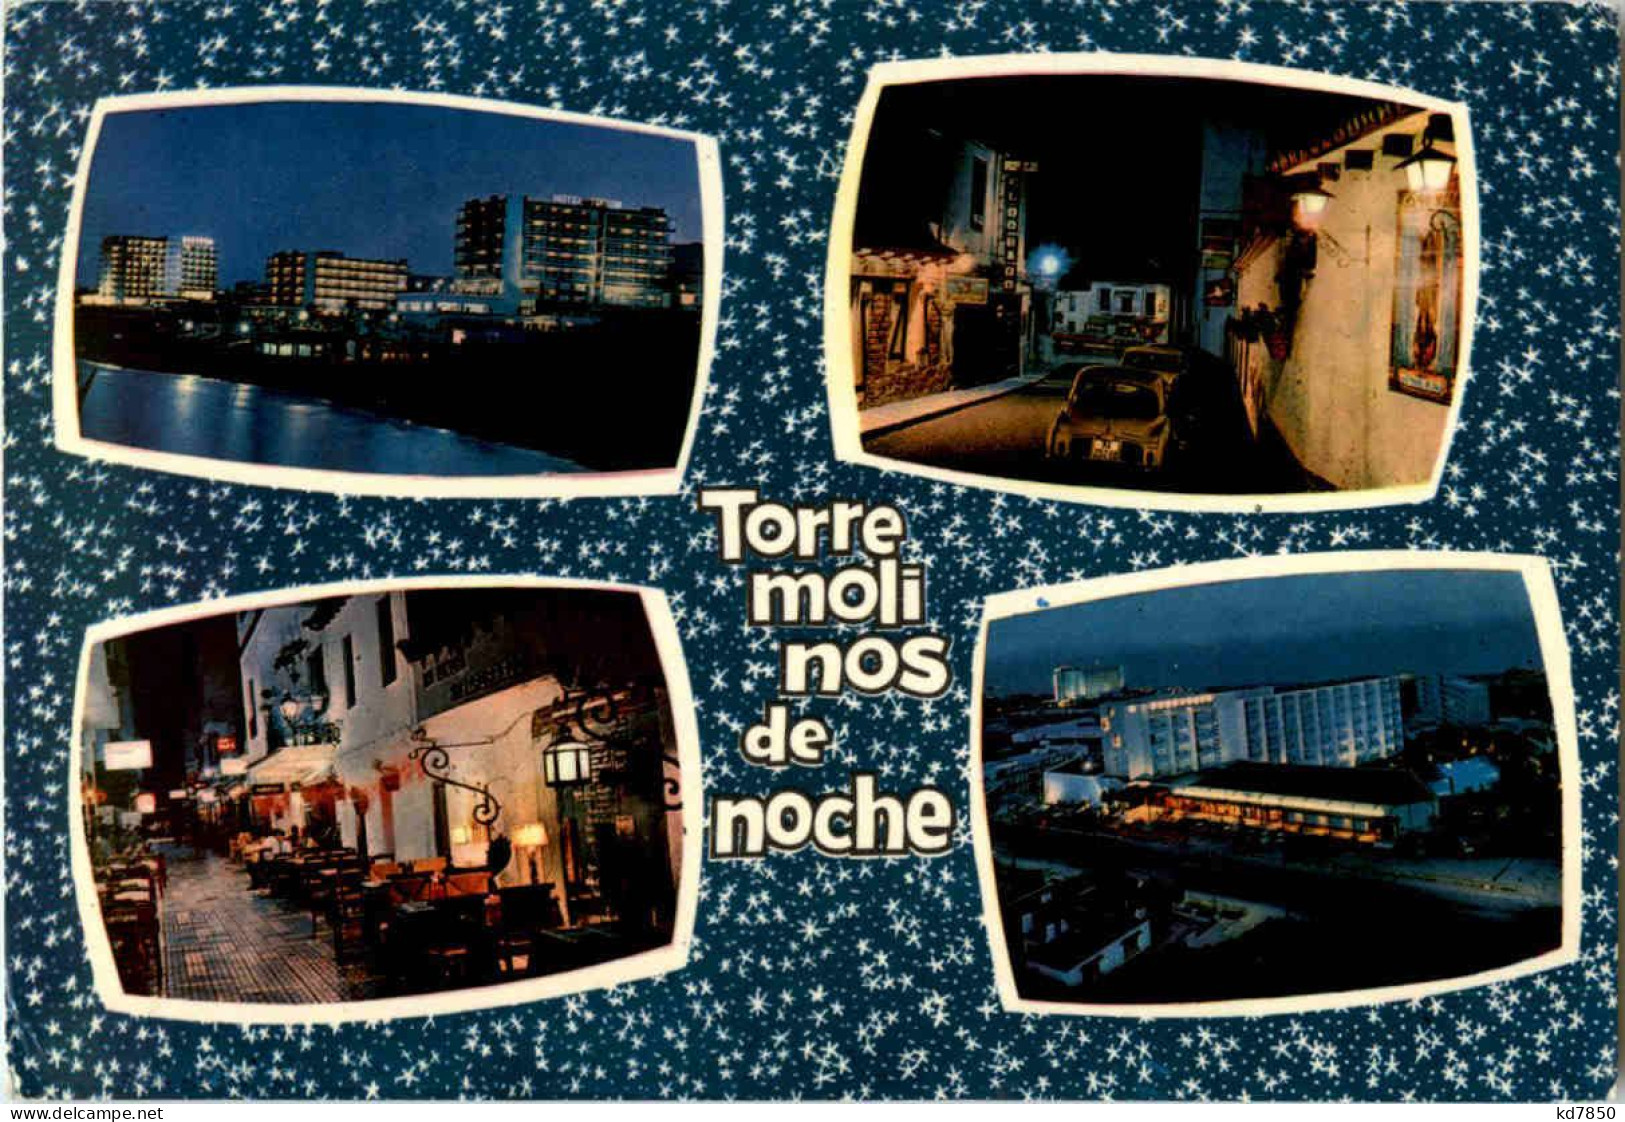 Torremolinos - Torre Moli Nos De Noche - Málaga